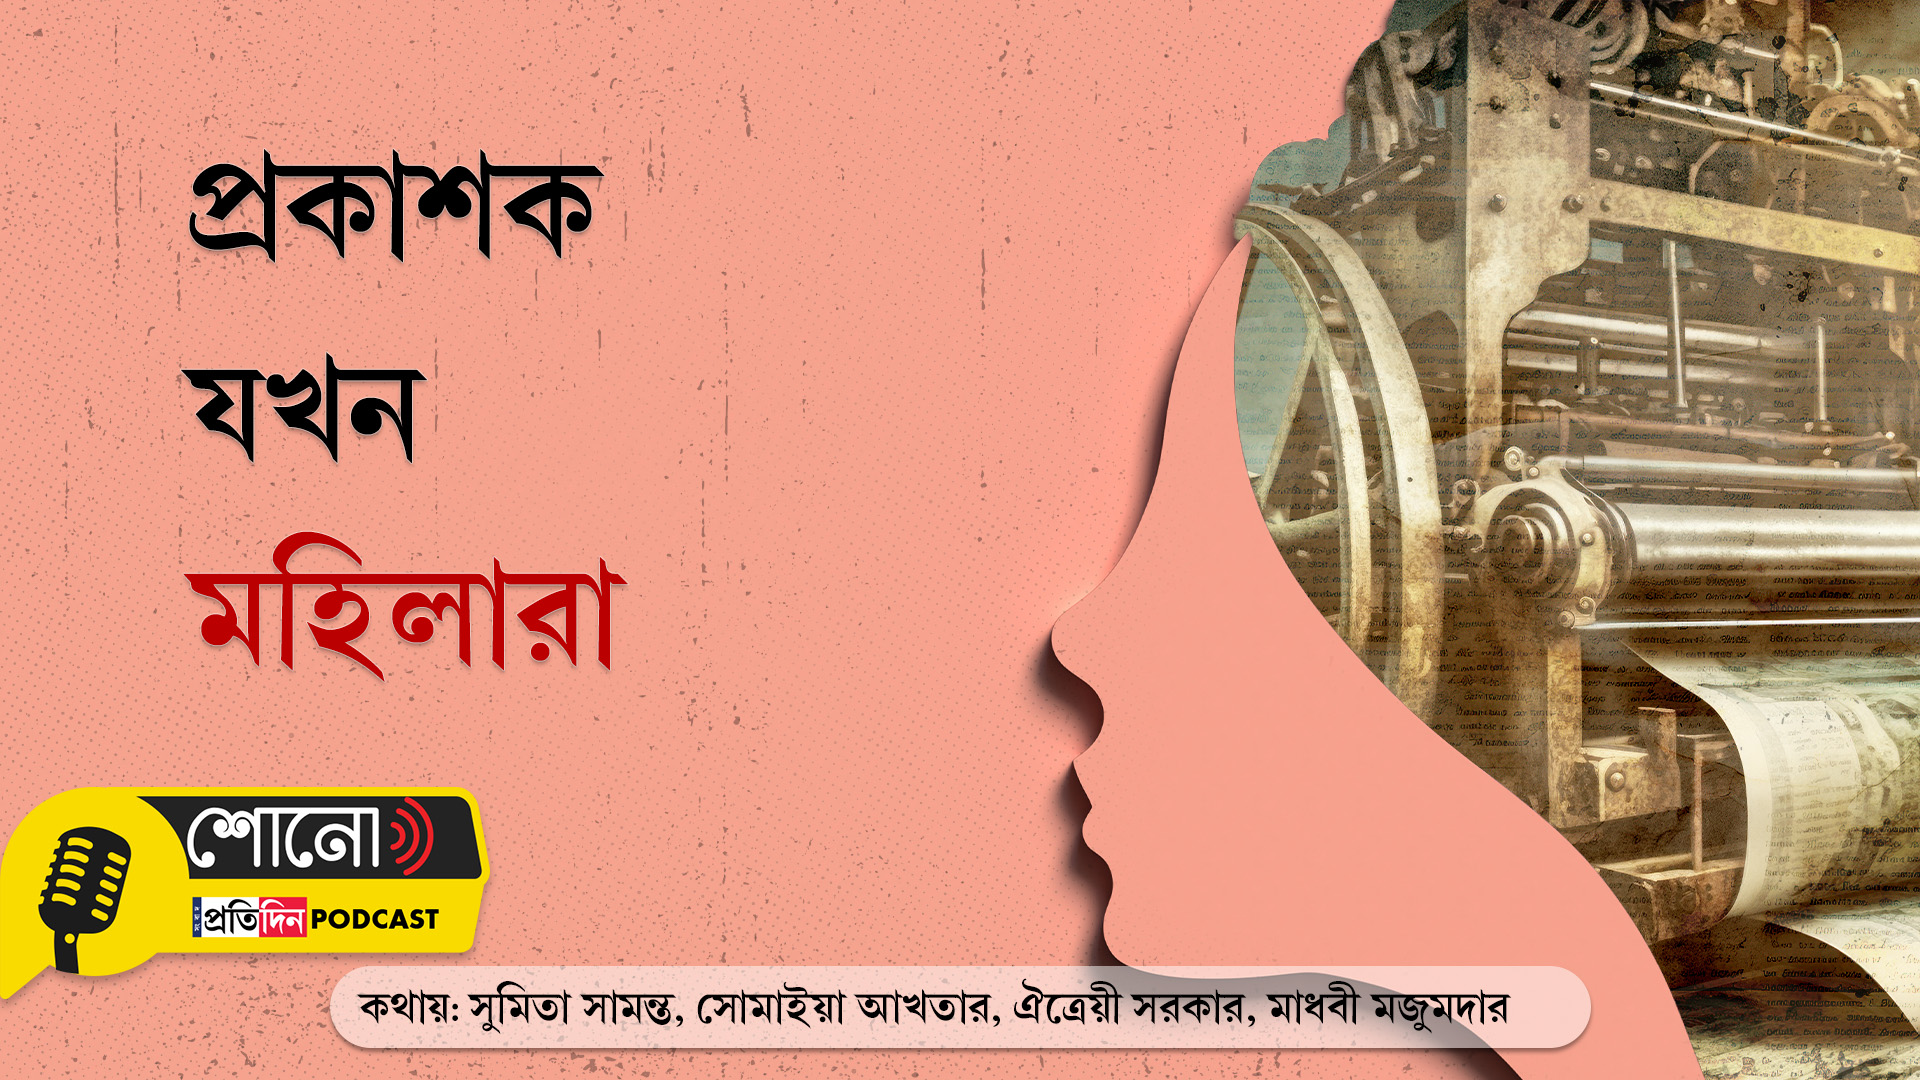 women's day: women publishers in Bengali book publishing